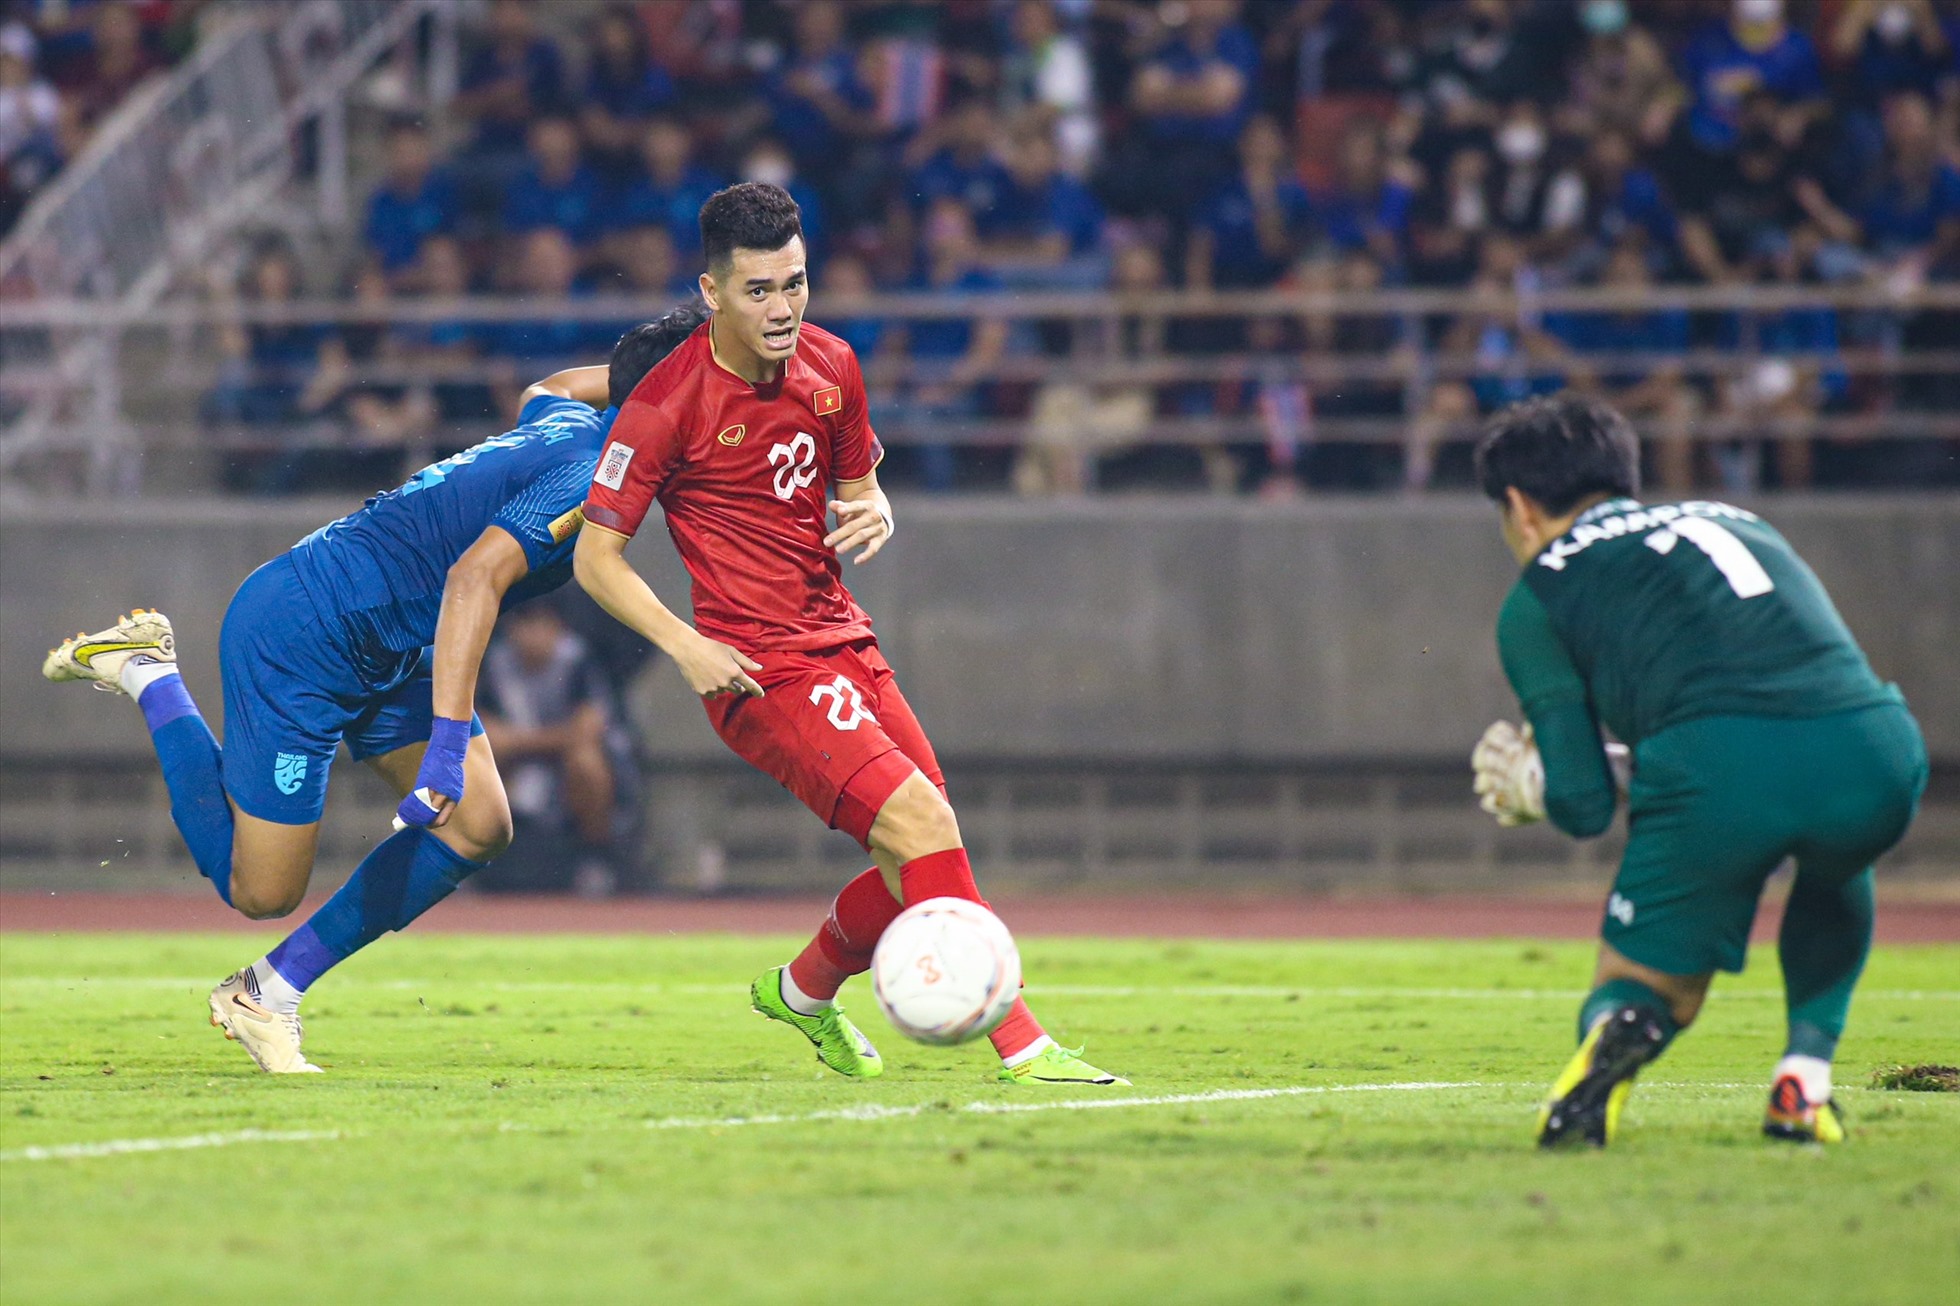 Dù rất nỗ lực nhưng tuyển Việt Nam đành chấp nhận thua Thái Lan 0-1 và thất bại chung cuộc sau 2 lượt trận với tỉ số 2-3.